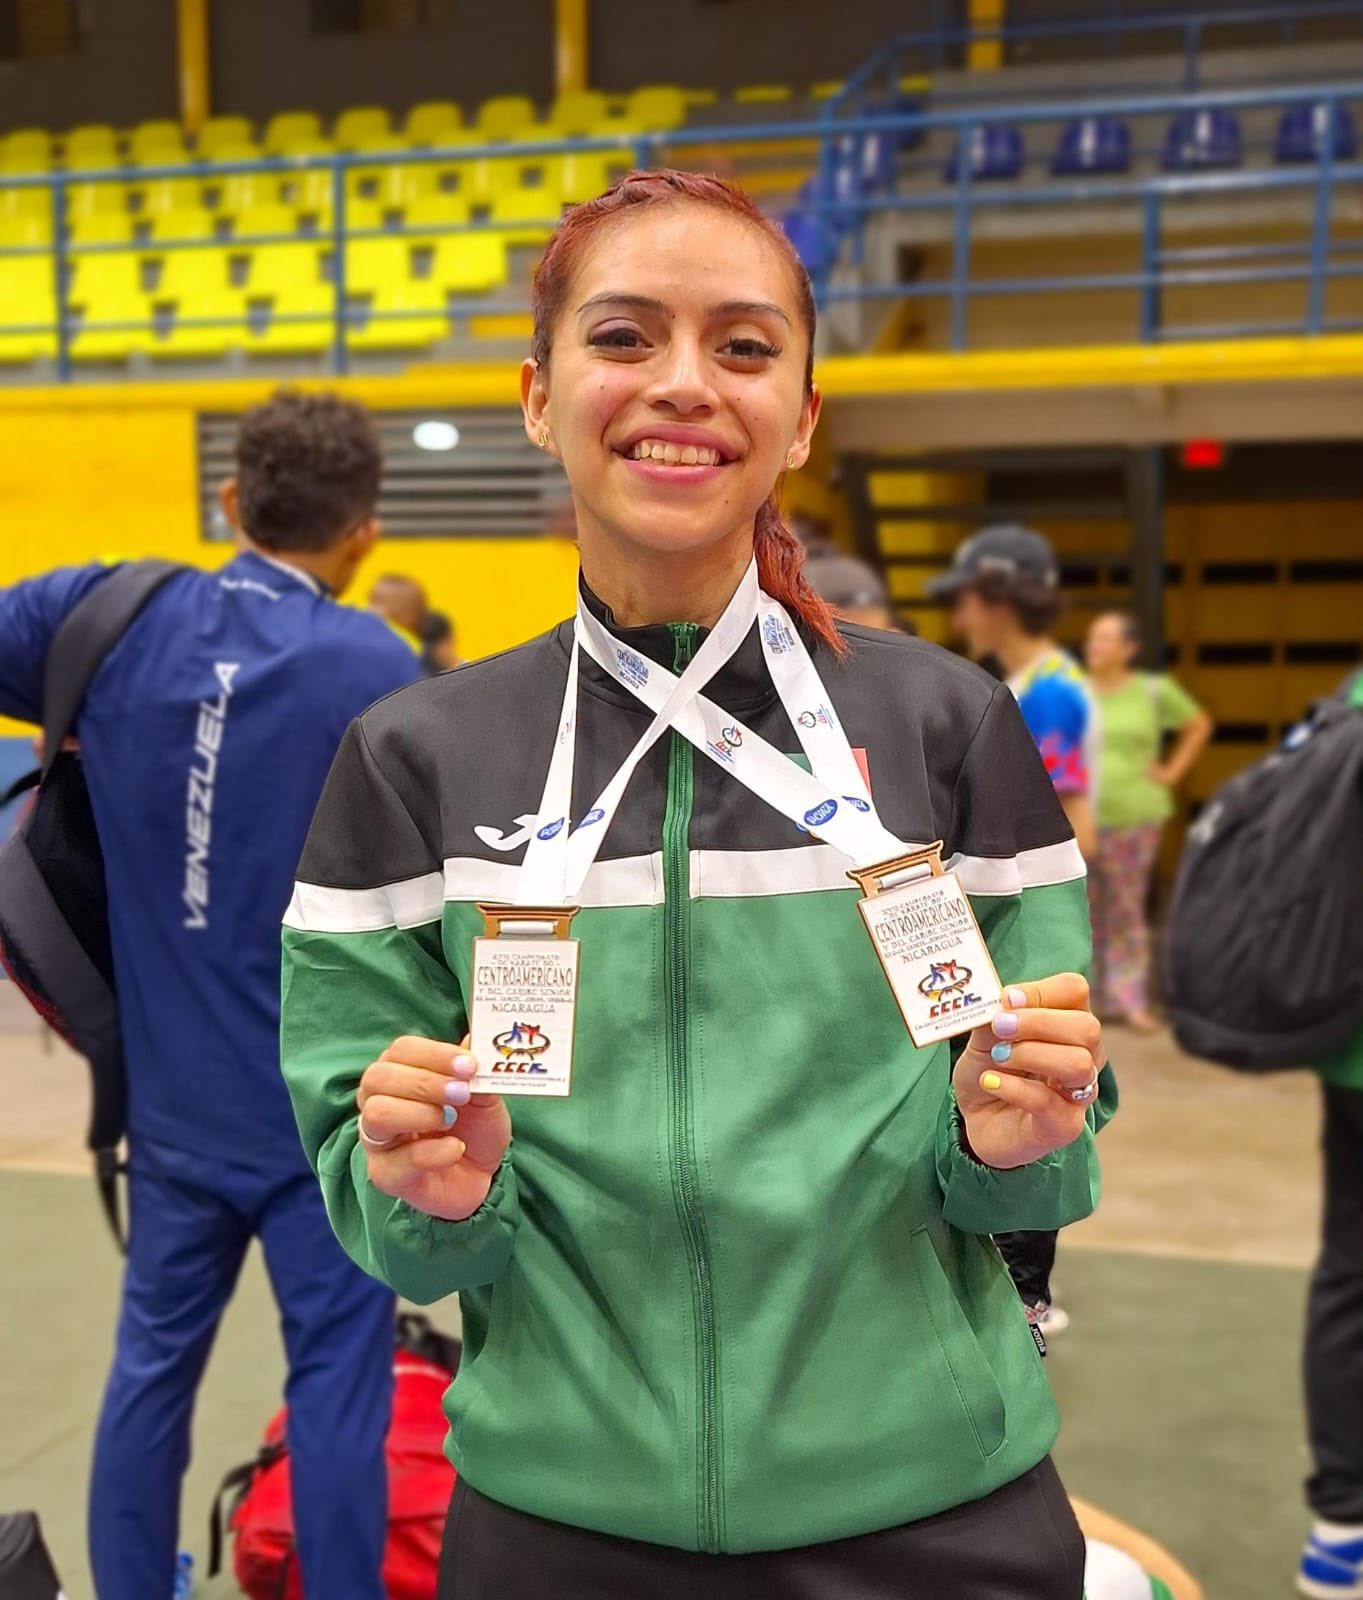 Yuriko Cortes consigue par de medallas en campeonato de Karate en Nicaragua